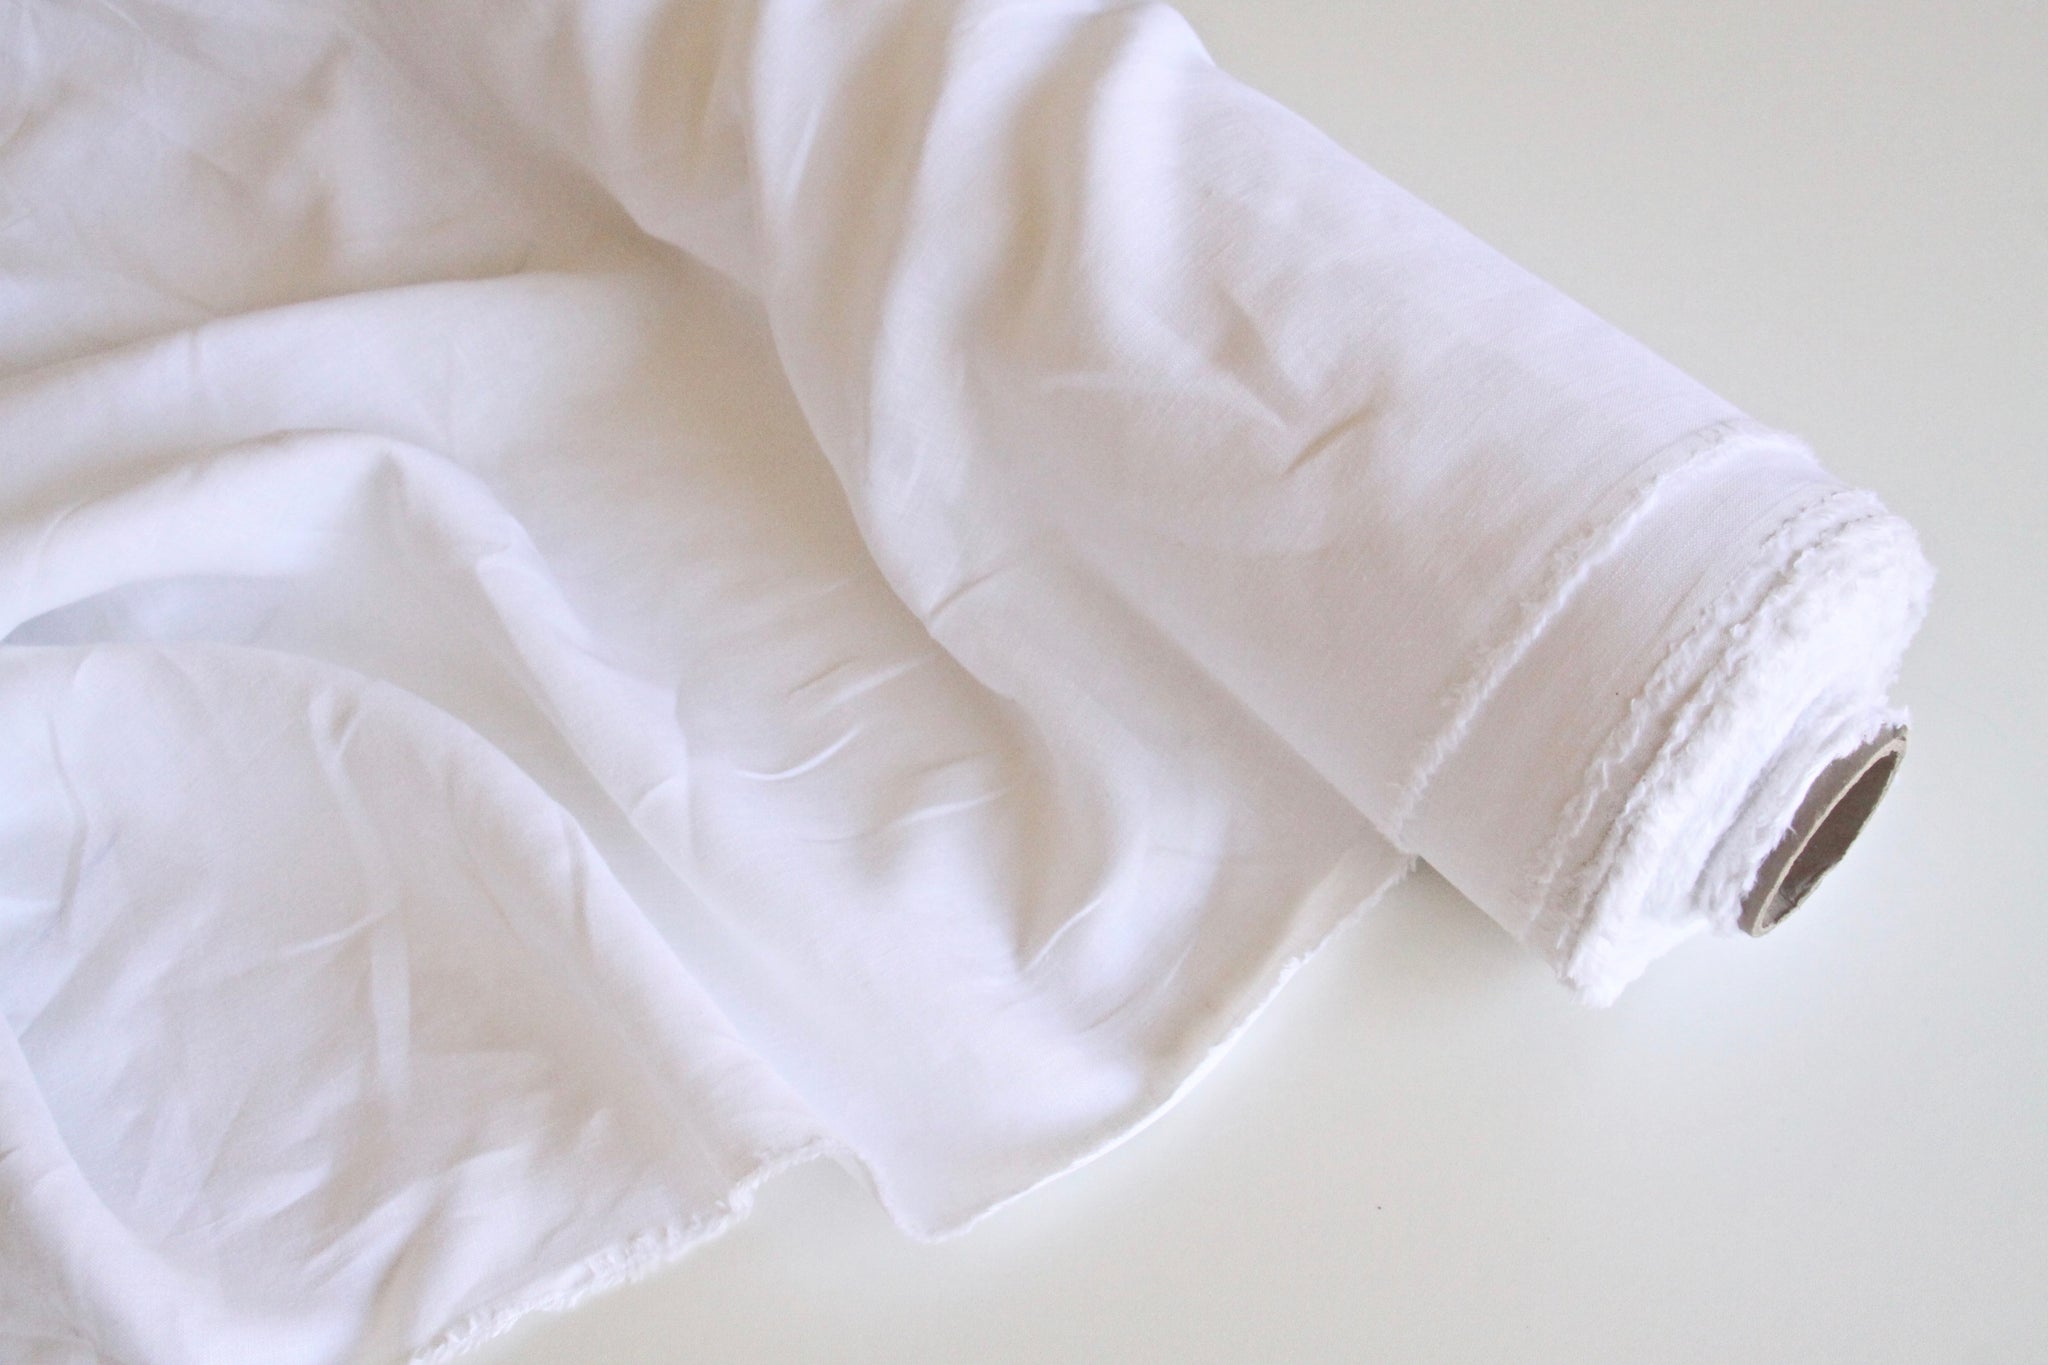 Perla Pure White - White Linen mix fabric, Plain